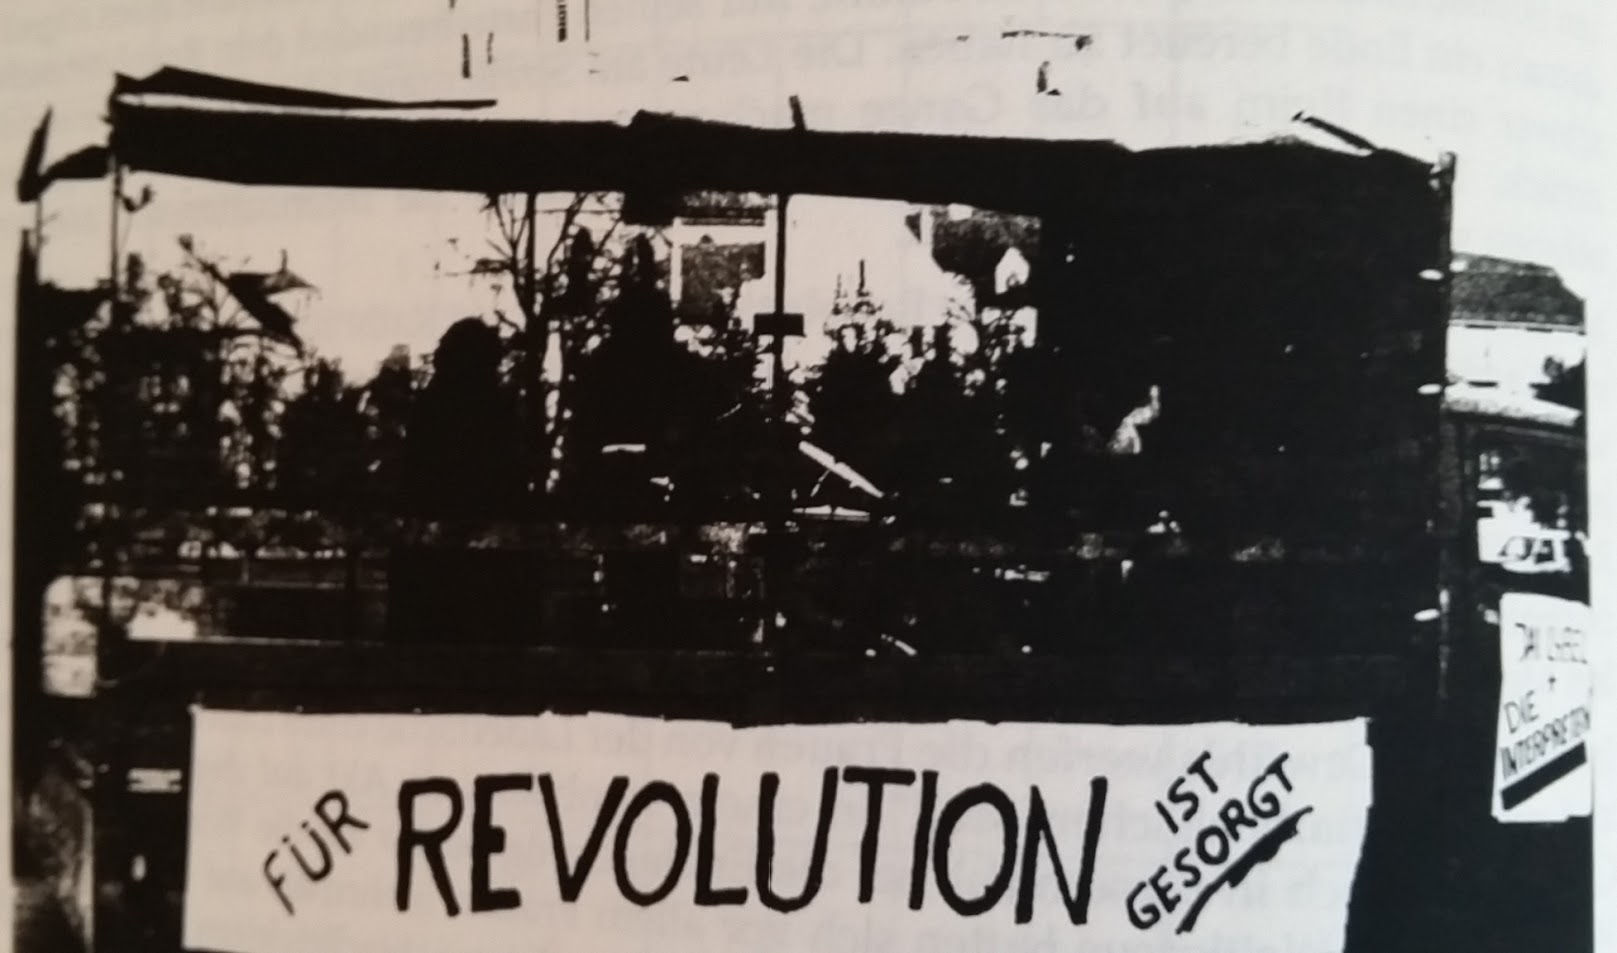 Revolution 1918 in der Gegensprechanlage am 4.11. um 21 h